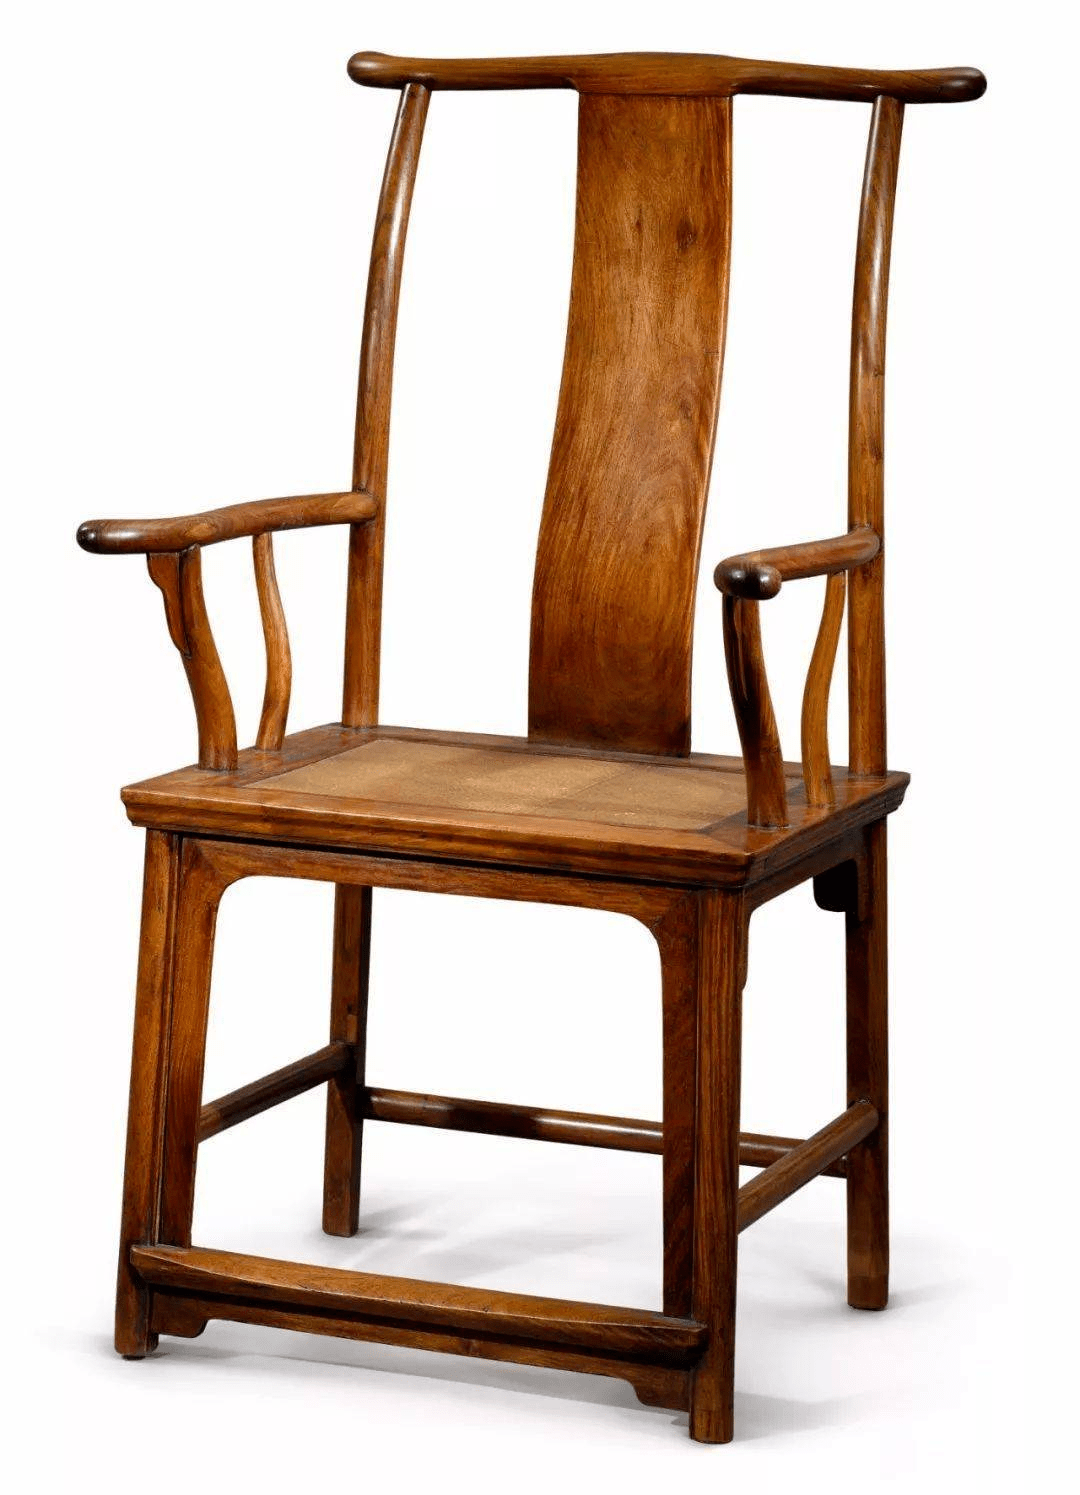 官帽椅是宋代定型的一种椅具,到明代时已发展为南官帽椅和北官帽椅